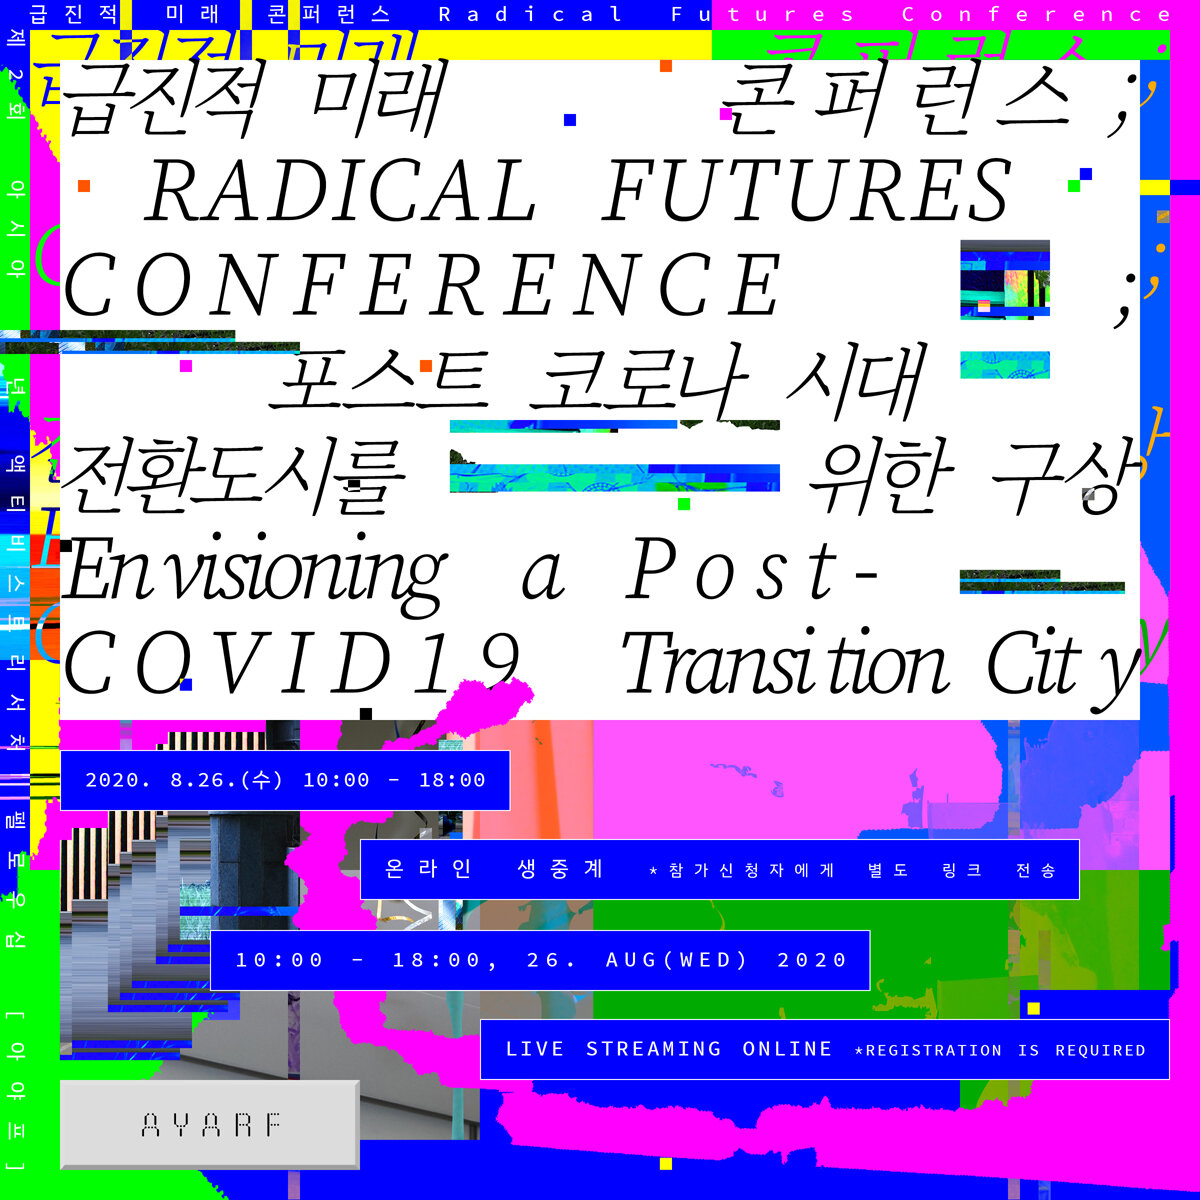 아야프 제2회 아시아 청년 액티비스트리서처 펠로우십에서 진행한 급진적 미래 콘퍼런스_포스트 코로나 시대 전환 도시를 위한 구상이라는 제목의 포스터가 삽입되어 있습니다.